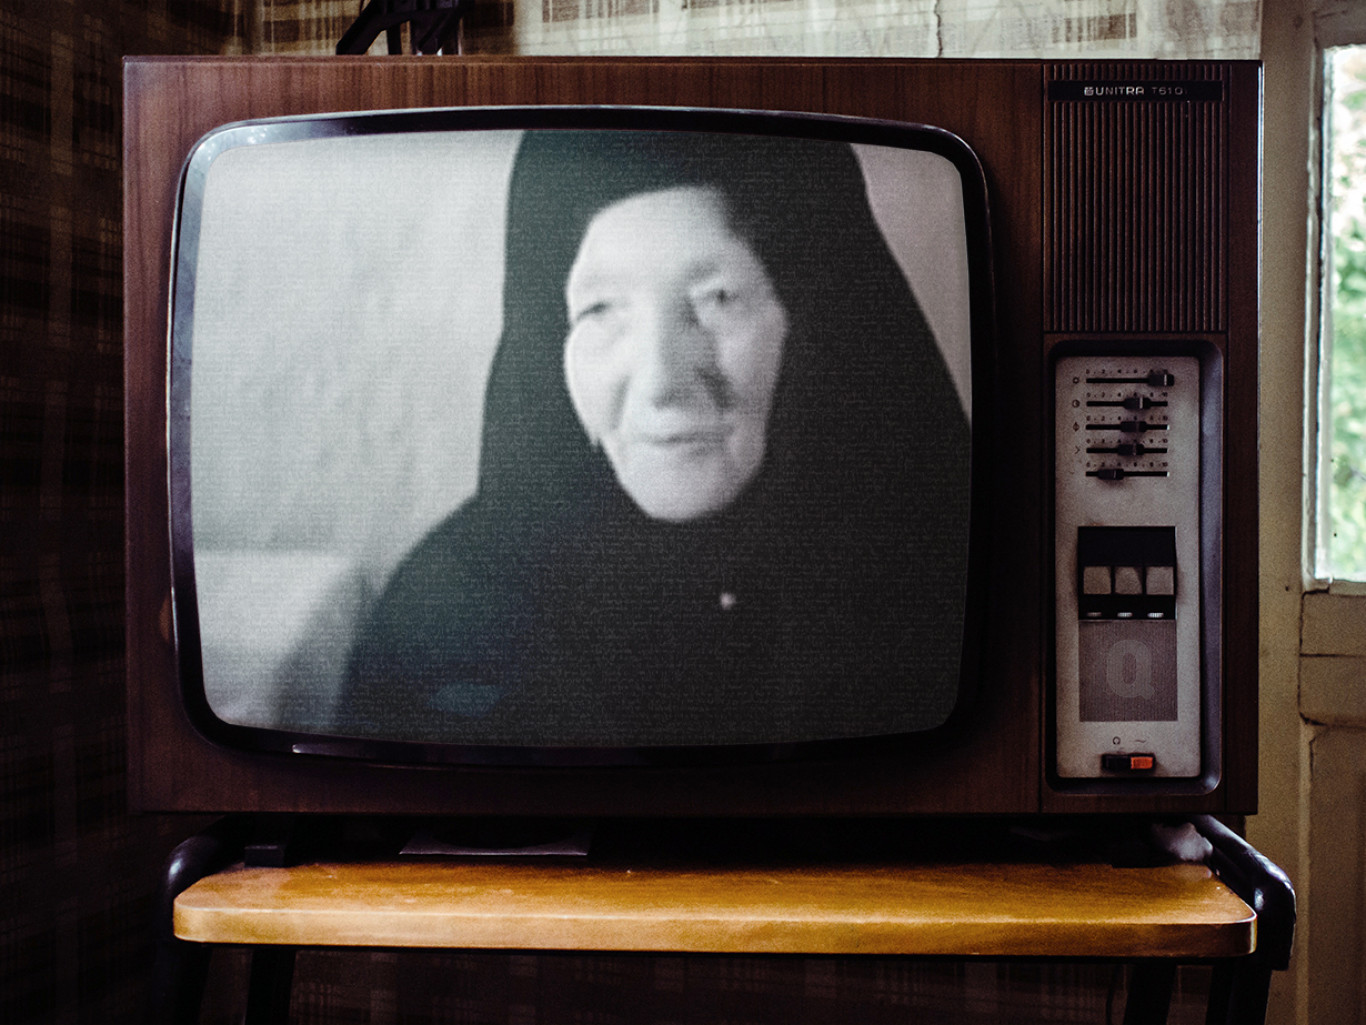 Videóajánló: 1967, amikor még éltek boszorkányok Magyarországon – Qubit